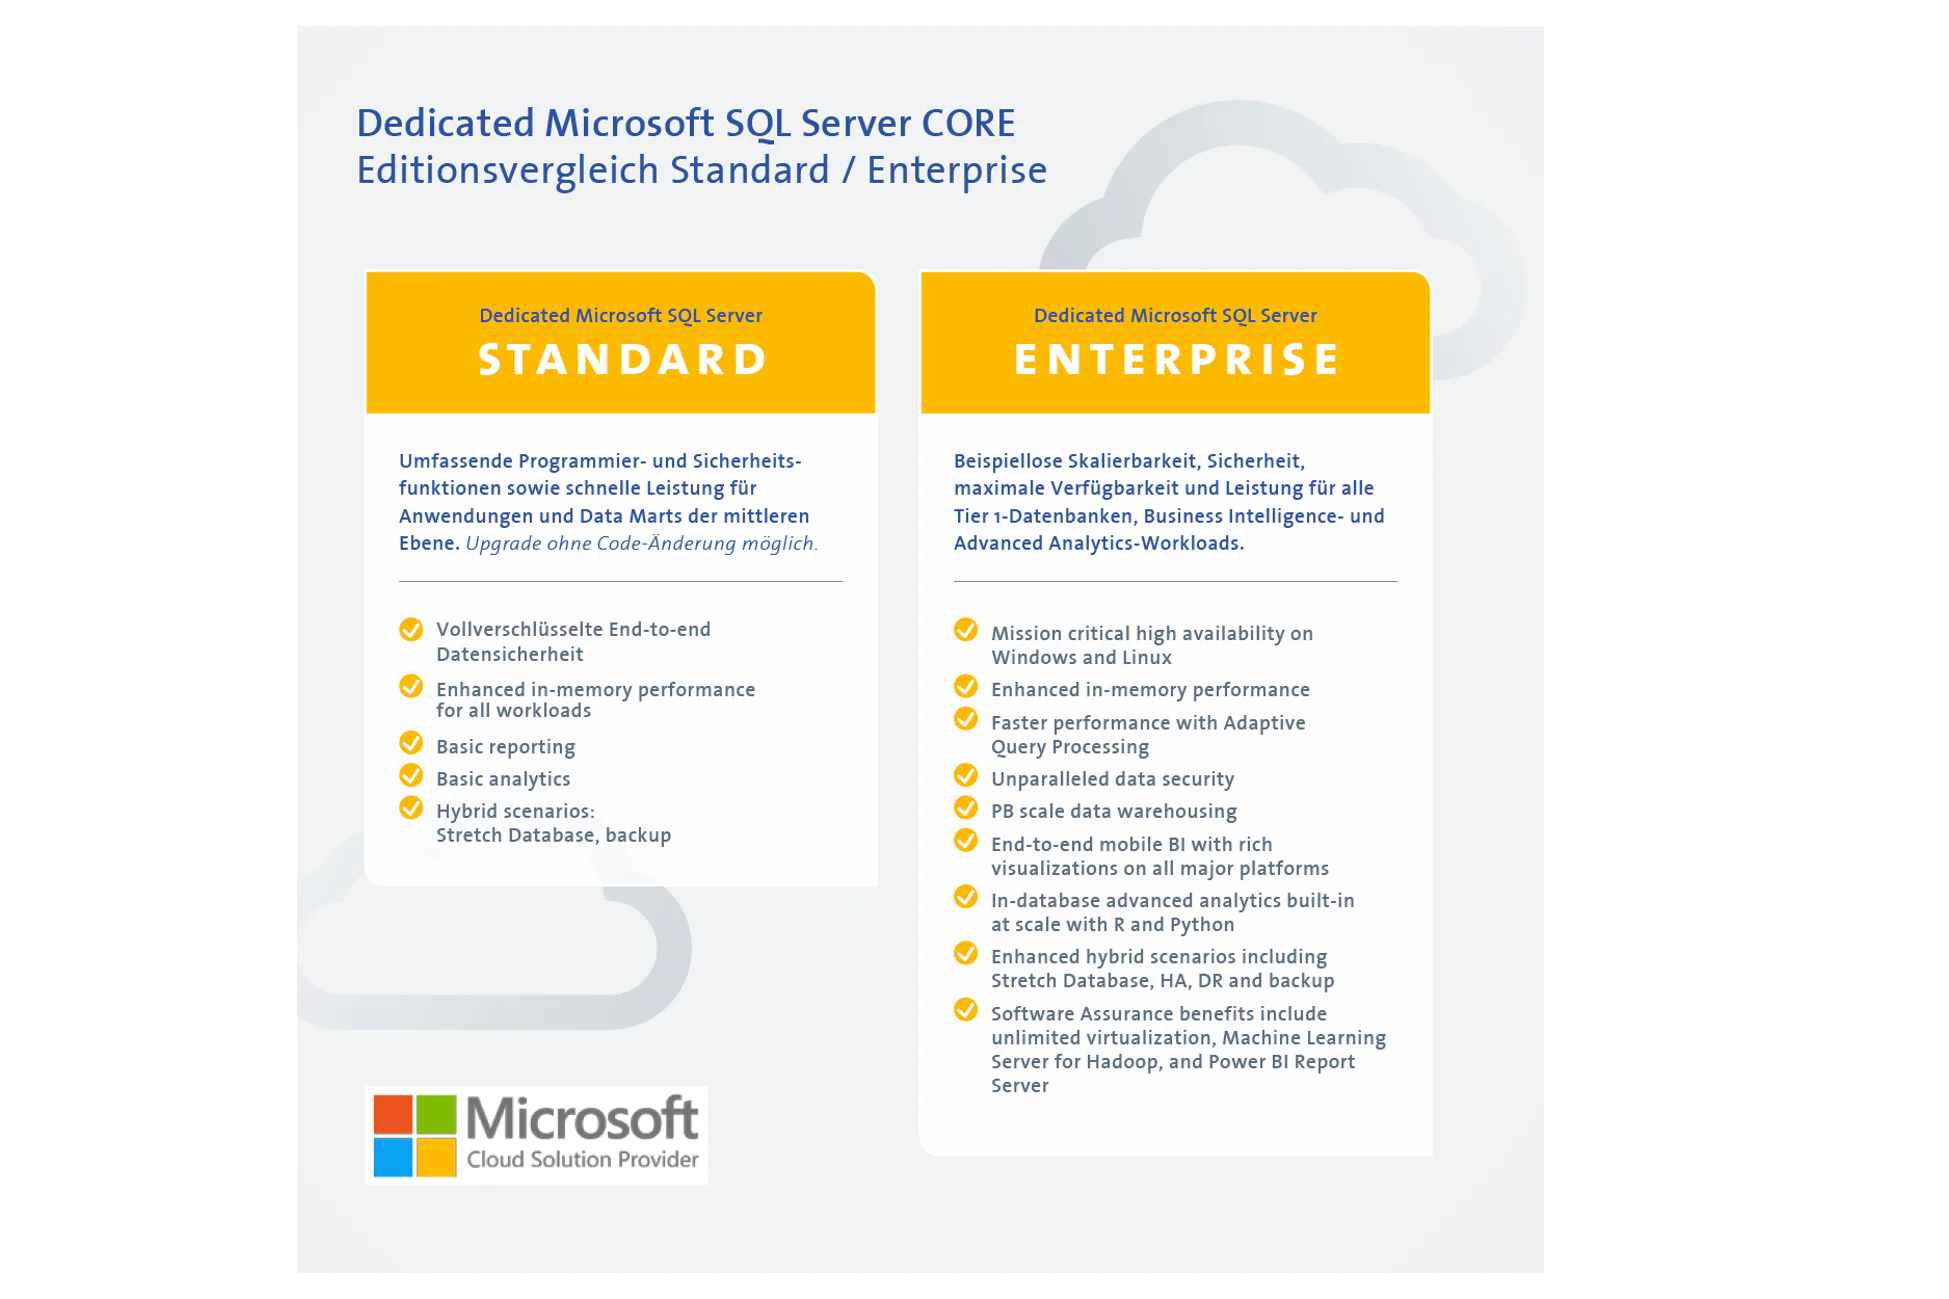 Tabellarischer Vergleich zwischen Standard und Enterprise Dedicated Microsoft SQL Server CORE